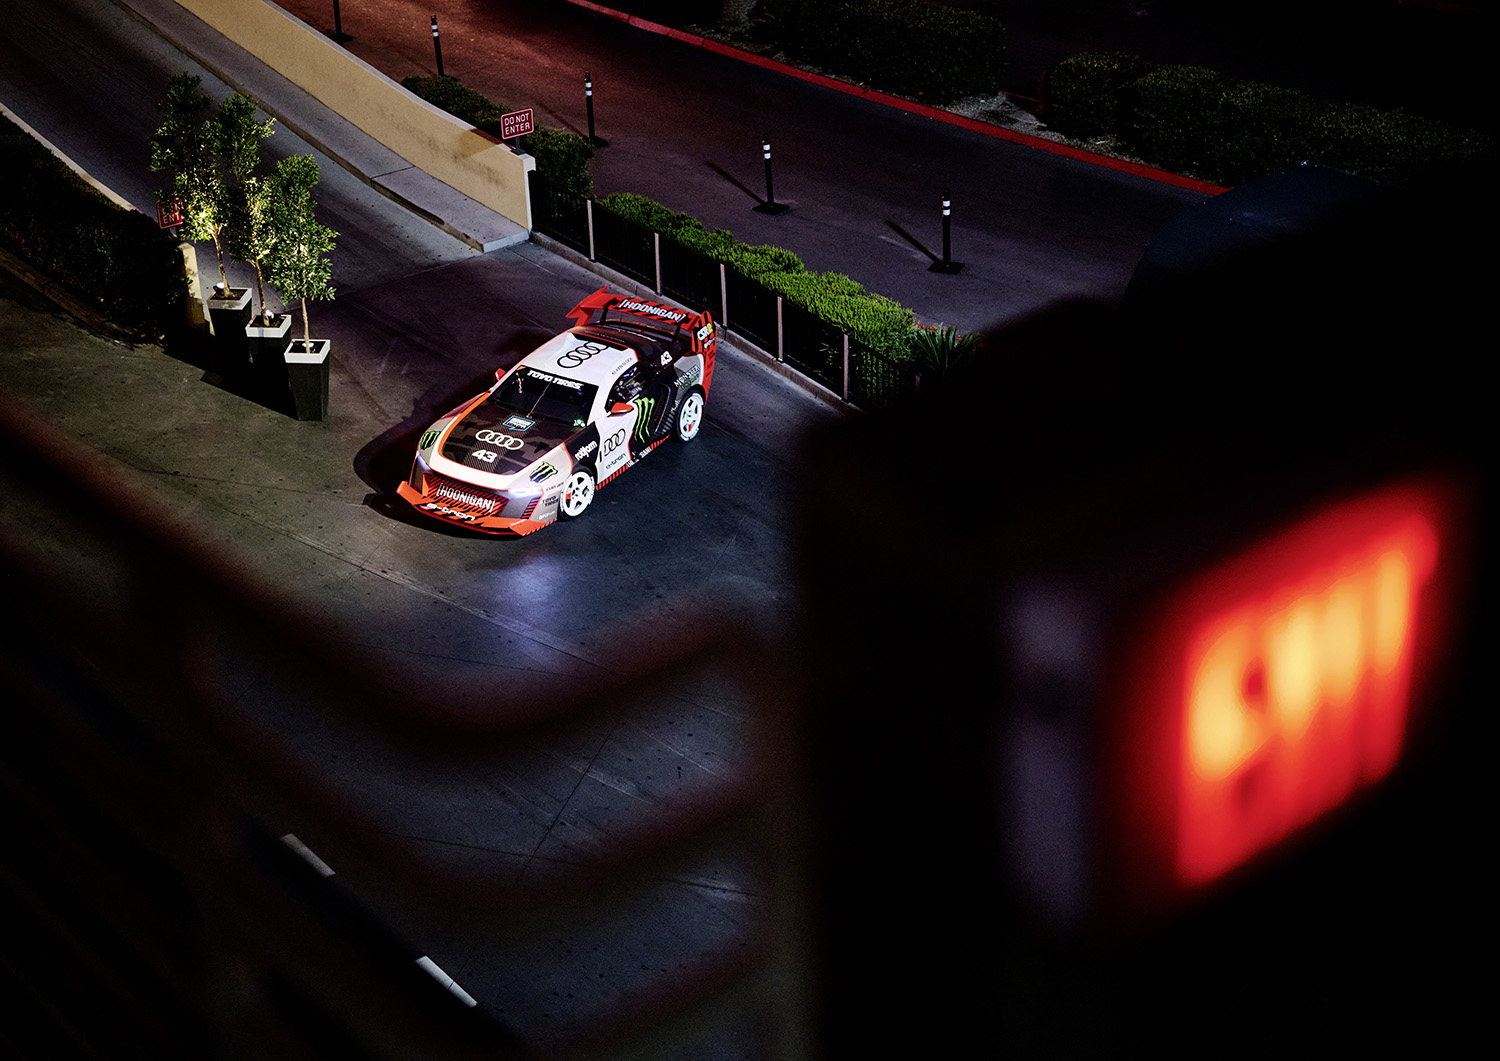 ケン・ブロックがワンオフモデル「Audi S1 e-tron quattro」を使って新作映像を公開 〜 画像23